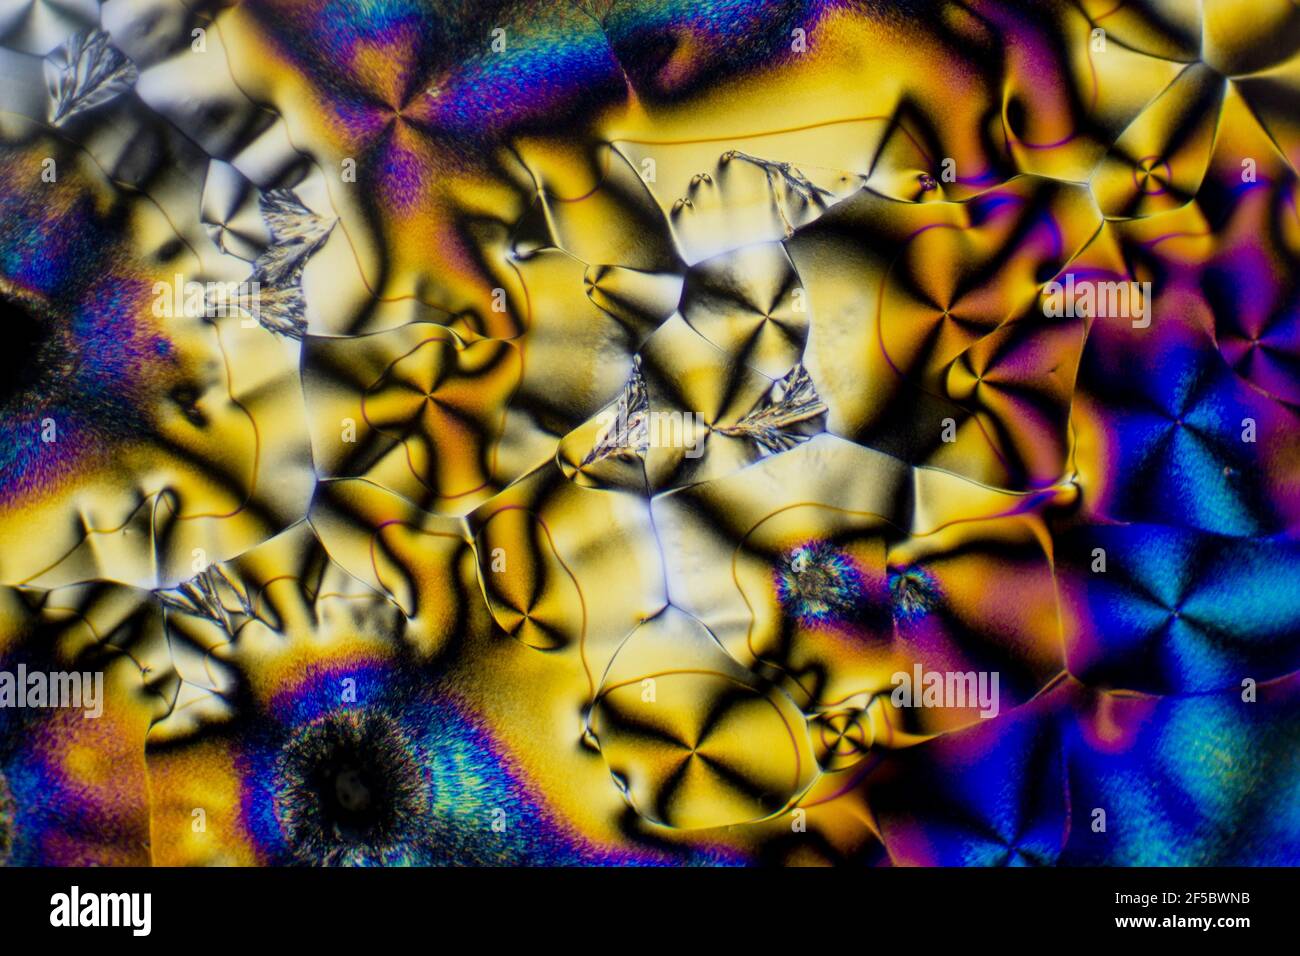 Esta es una foto microscópica de cristales de vitamina C. Usé filtros polarizadores para sacar los colores brillantes y las texturas de cristal. Foto de stock